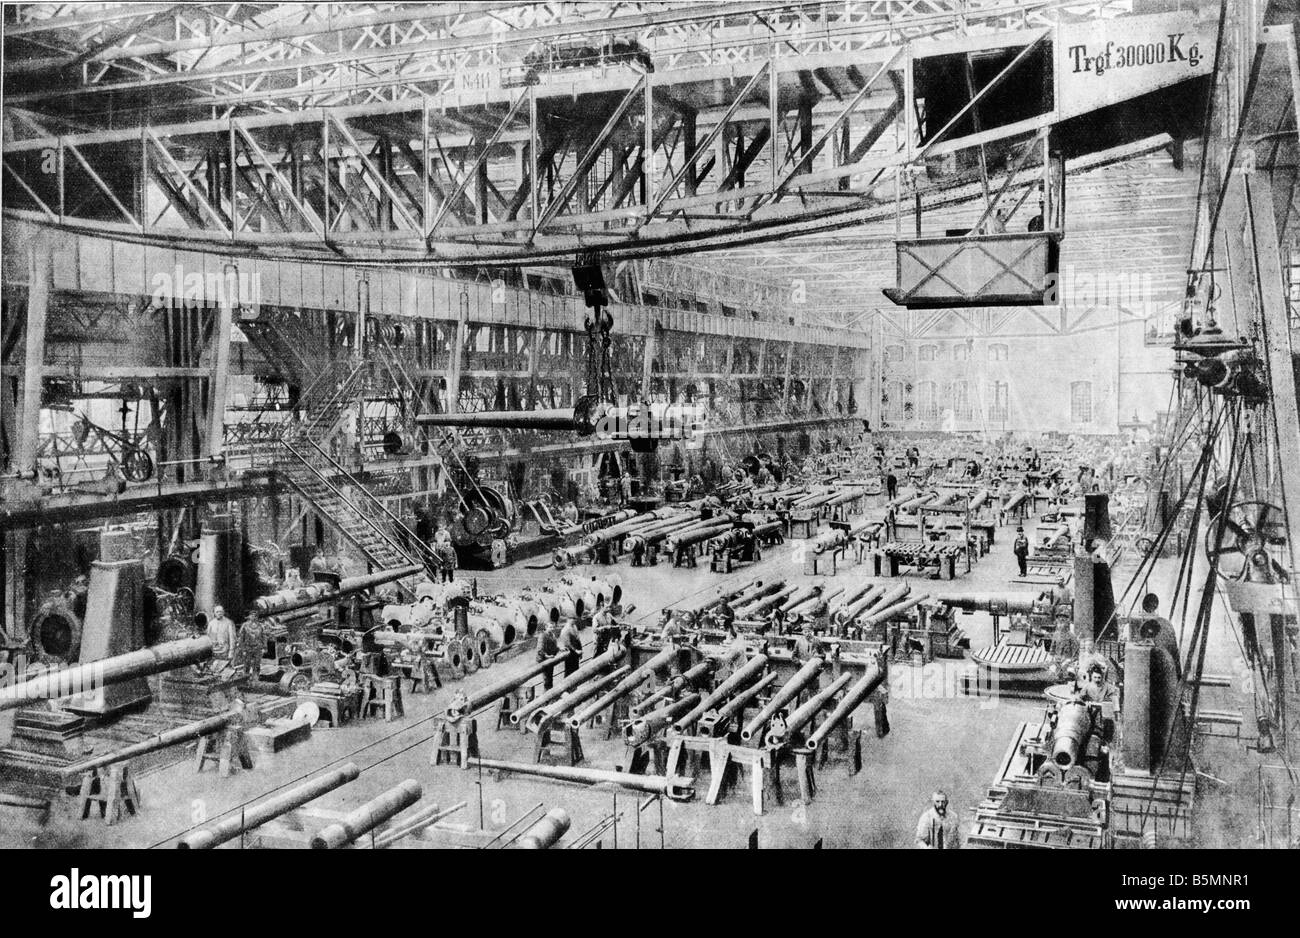 5 E2 I1 1914 e la produzione di armamenti a Krupp c 1914 Essen Friedrich Krupp AG vista interna della produzione degli armamenti foto c 1914 Foto Stock